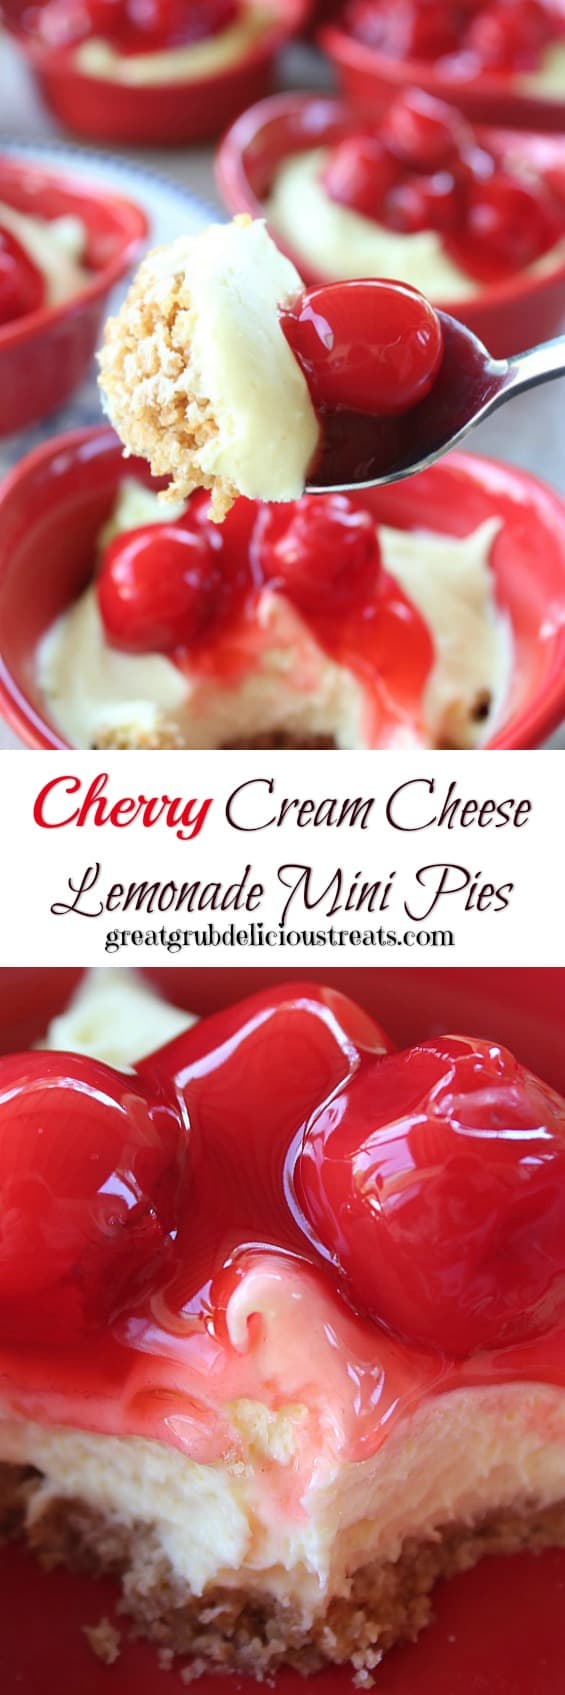 Cherry Cream Cheese Lemonade Mini Pies